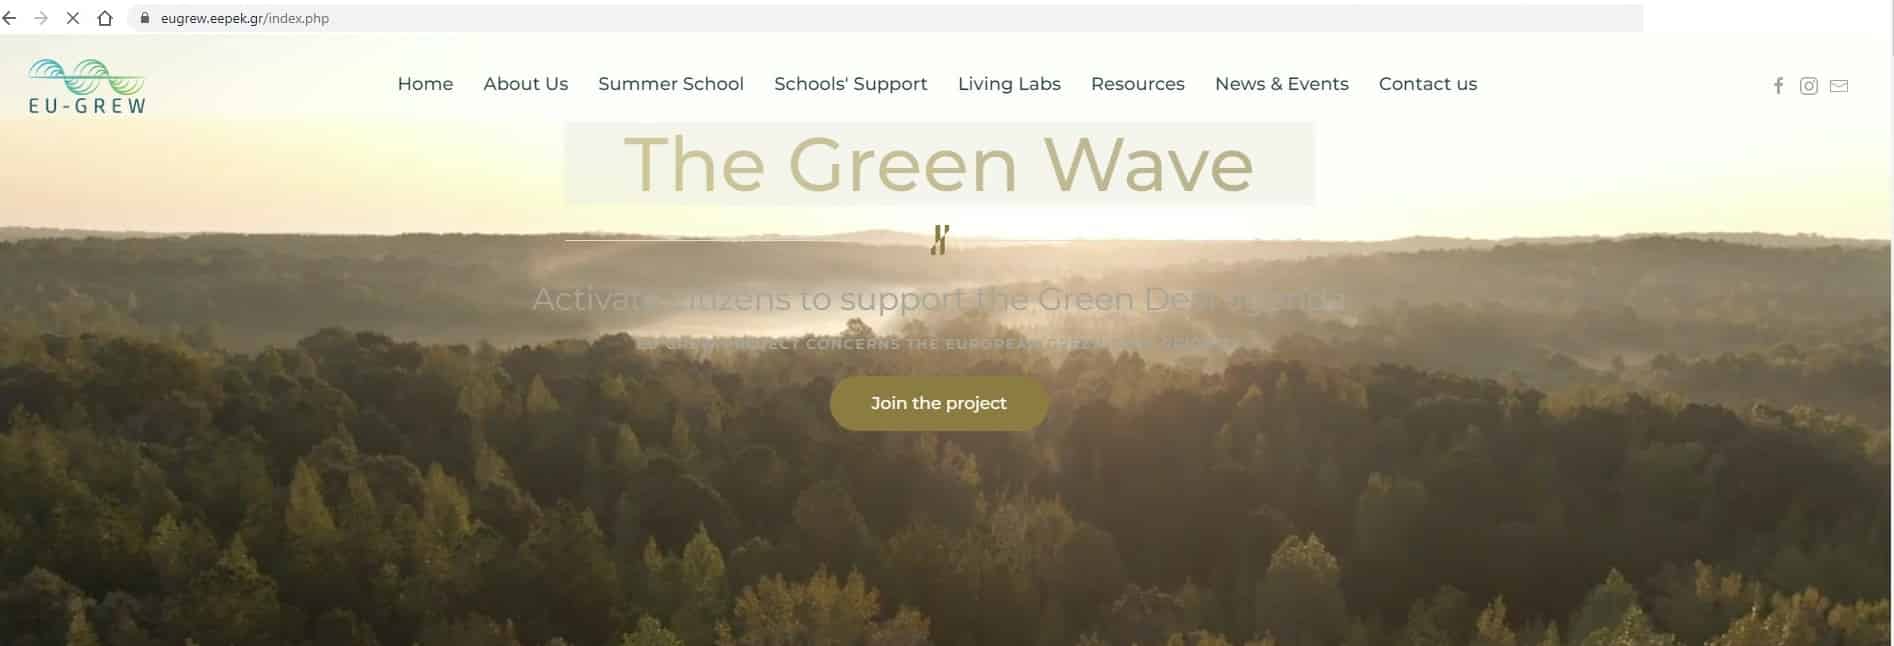 Η εκπαίδευση, όχημα για την προώθηση των αρχών της Ευρωπαϊκής Περιβαλλοντικής Πολιτικής: Νέο Καινοτόμο Ευρωπαϊκό έργο «EU – The Green Wave» (EU GreW) από την ΕΕΠΕΚ!